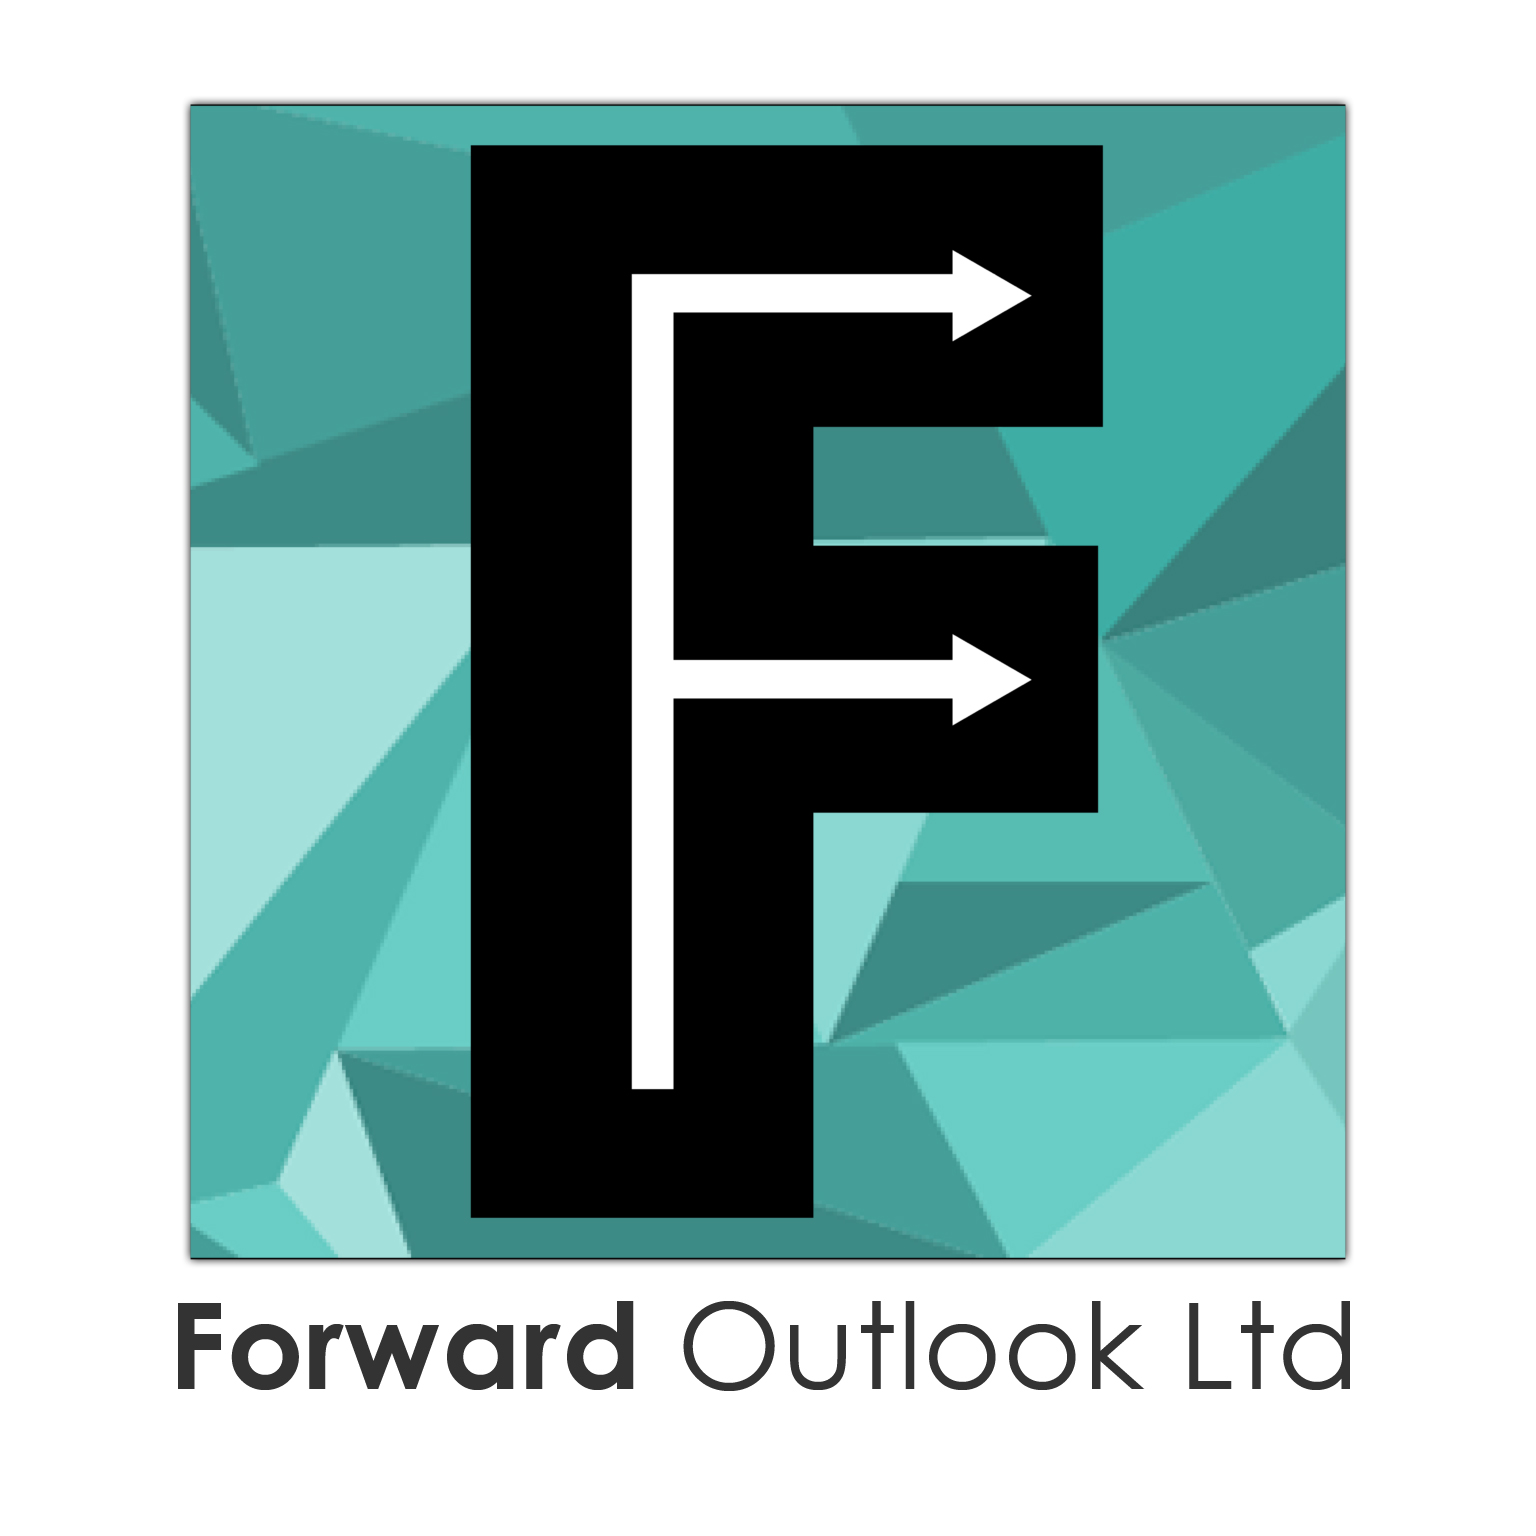 Foward Outlook Ltd runs carefulremovals.co.uk